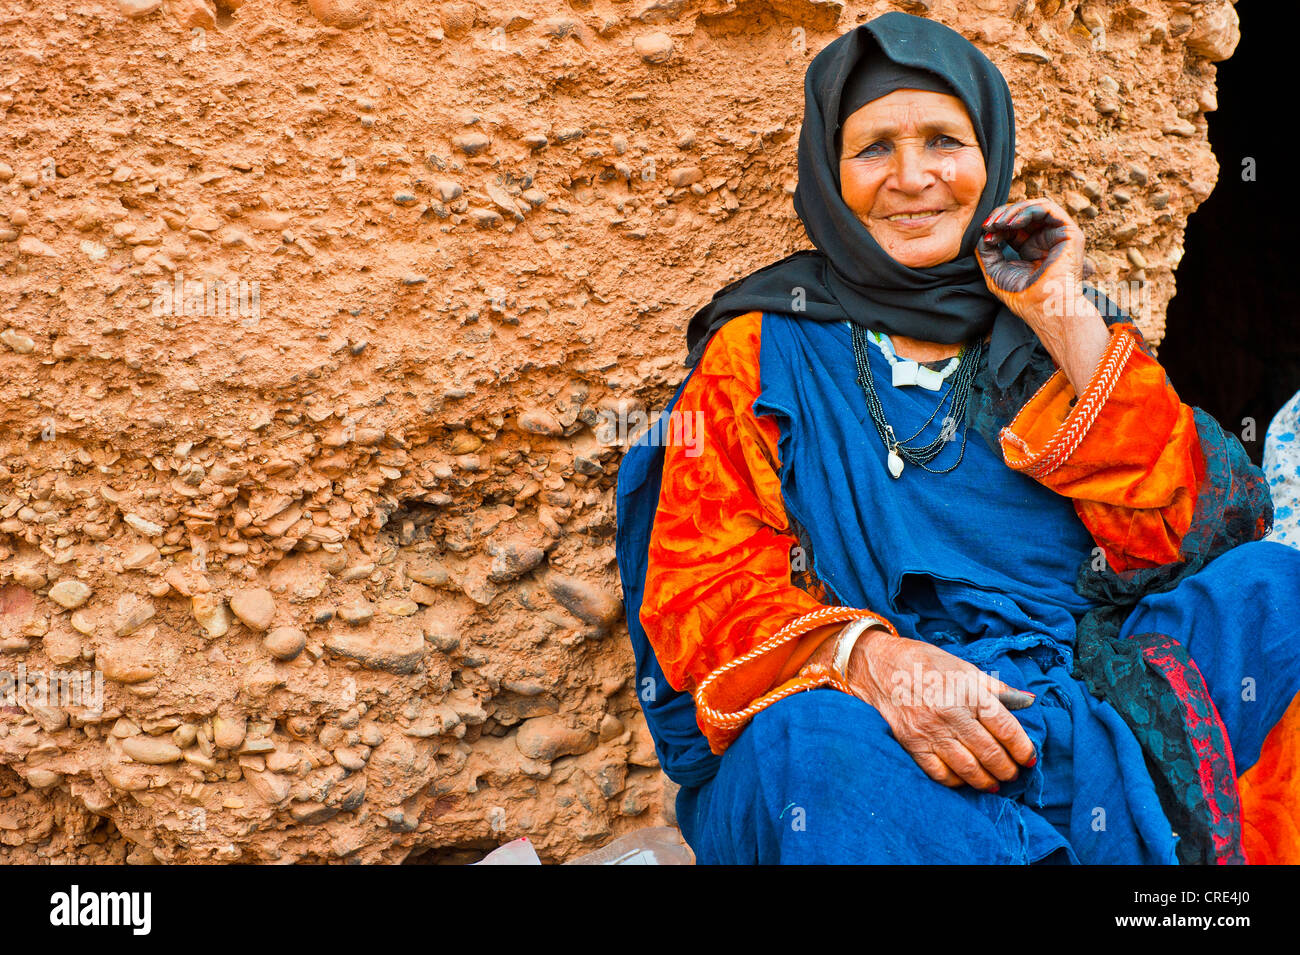 Ältere Nomade-Frau in traditioneller Kleidung, Hände schwarz mit Henna,  Marokko, Afrika Stockfotografie - Alamy